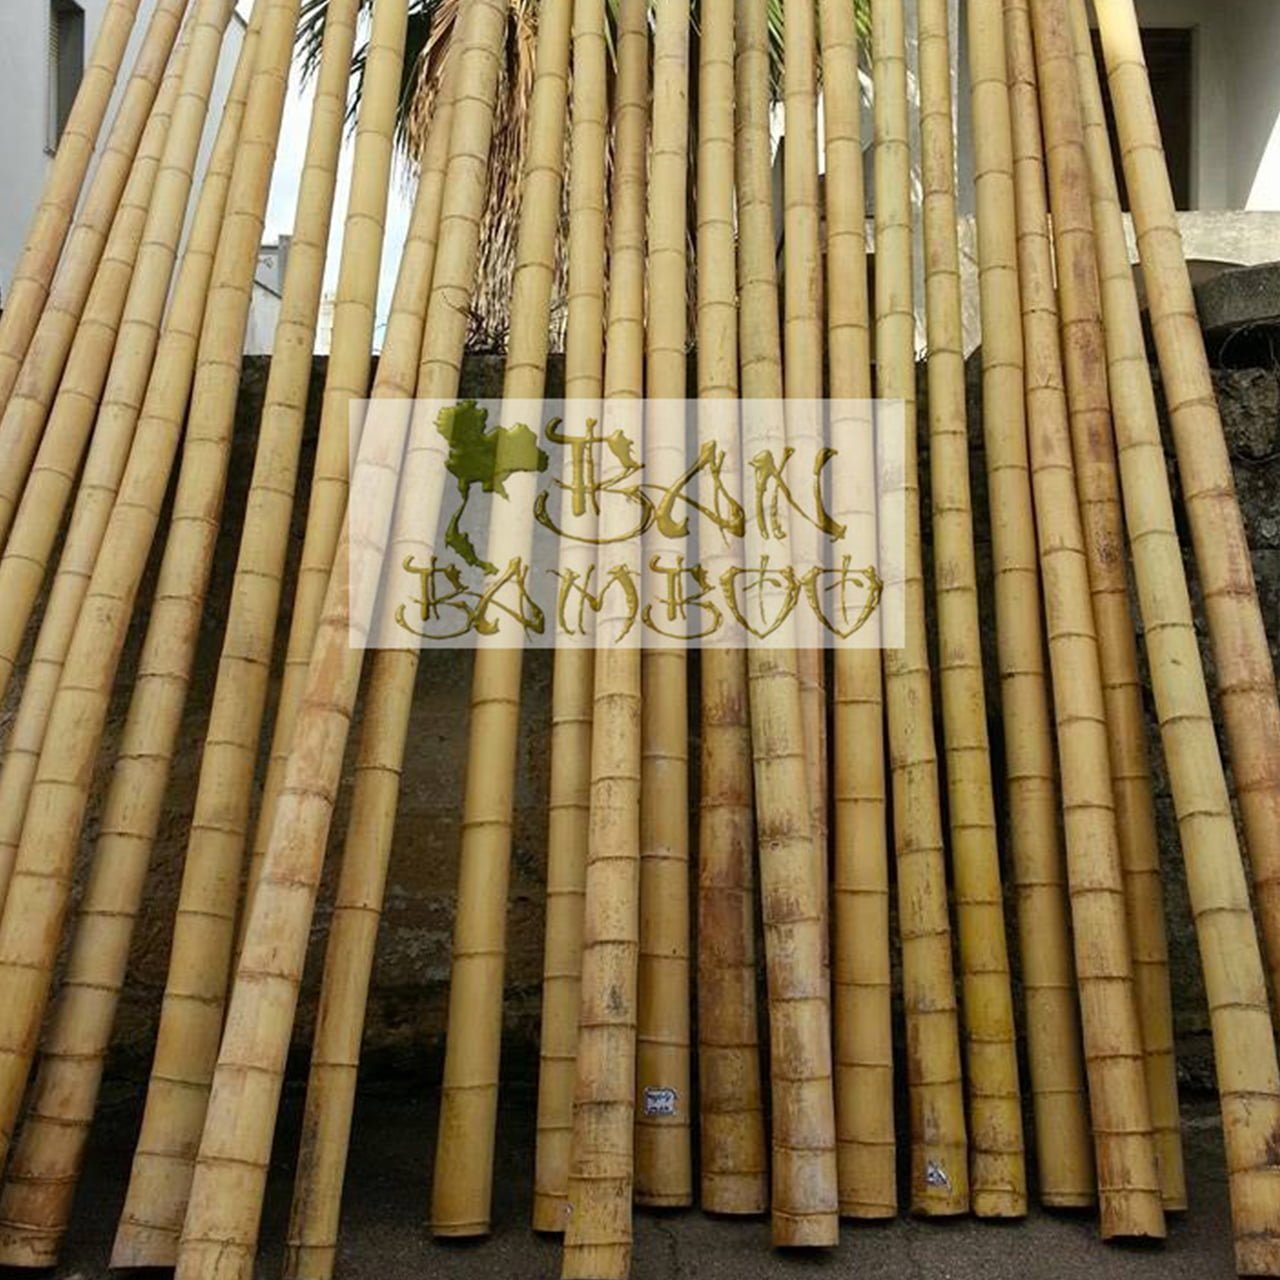 Canne di bamboo – Canne di bambu’